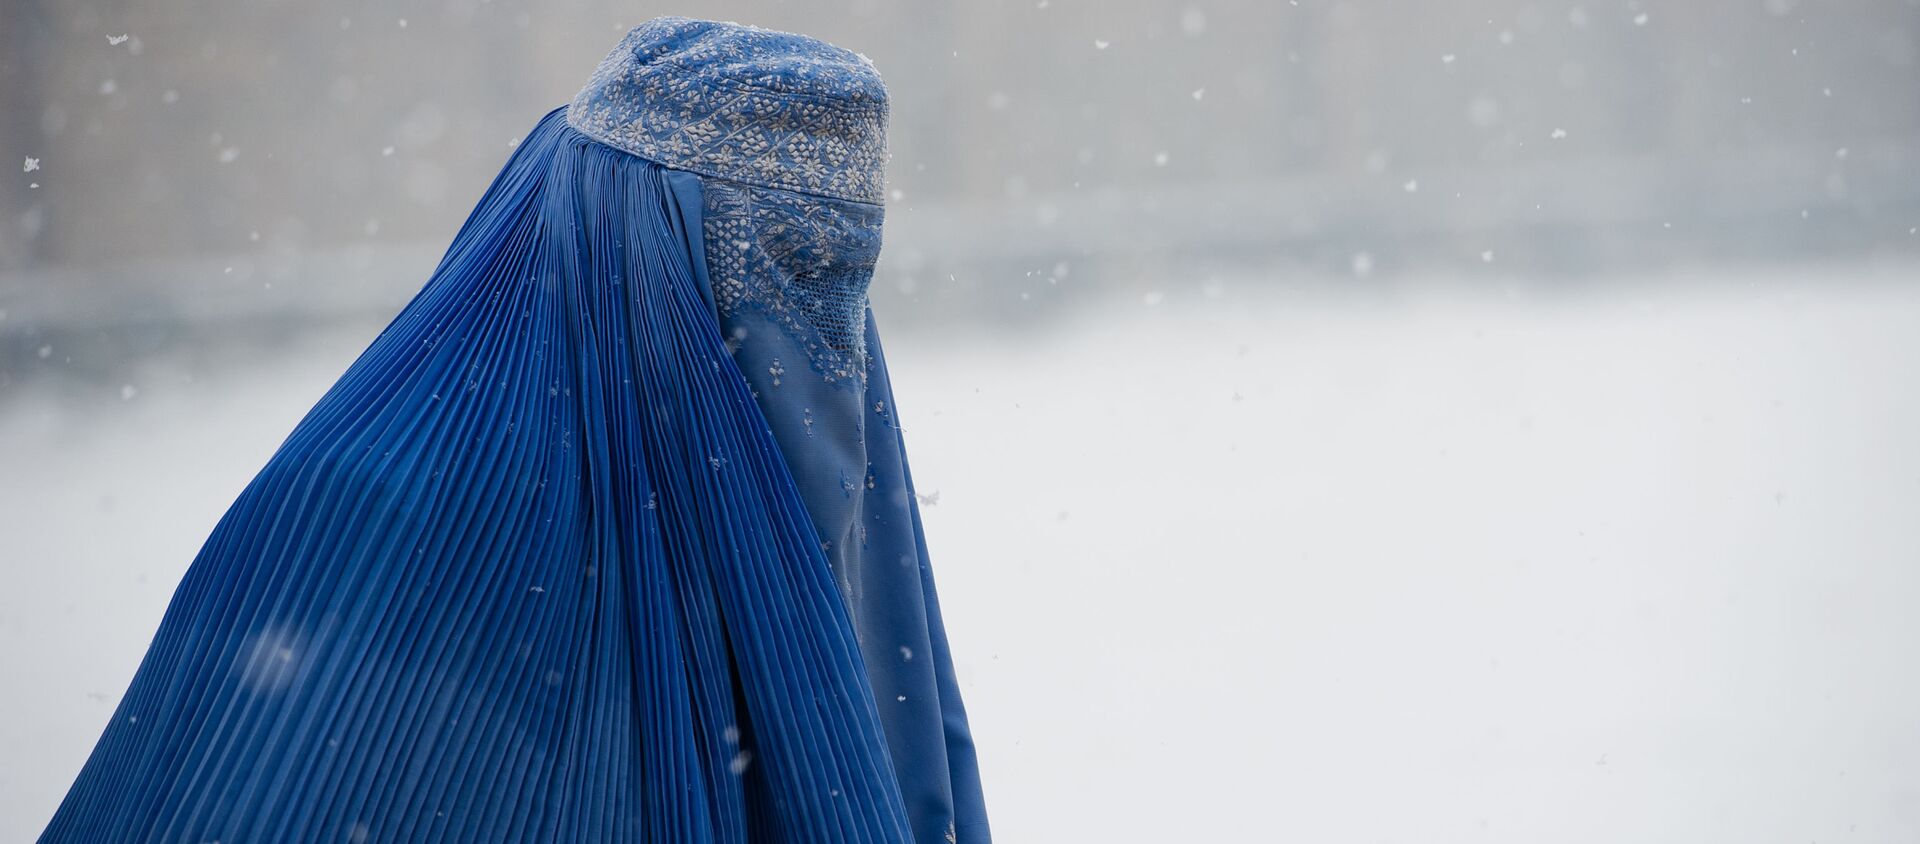  قیمت برقع چادری در کابل 10 برابر شد - اسپوتنیک افغانستان  , 1920, 18.08.2021